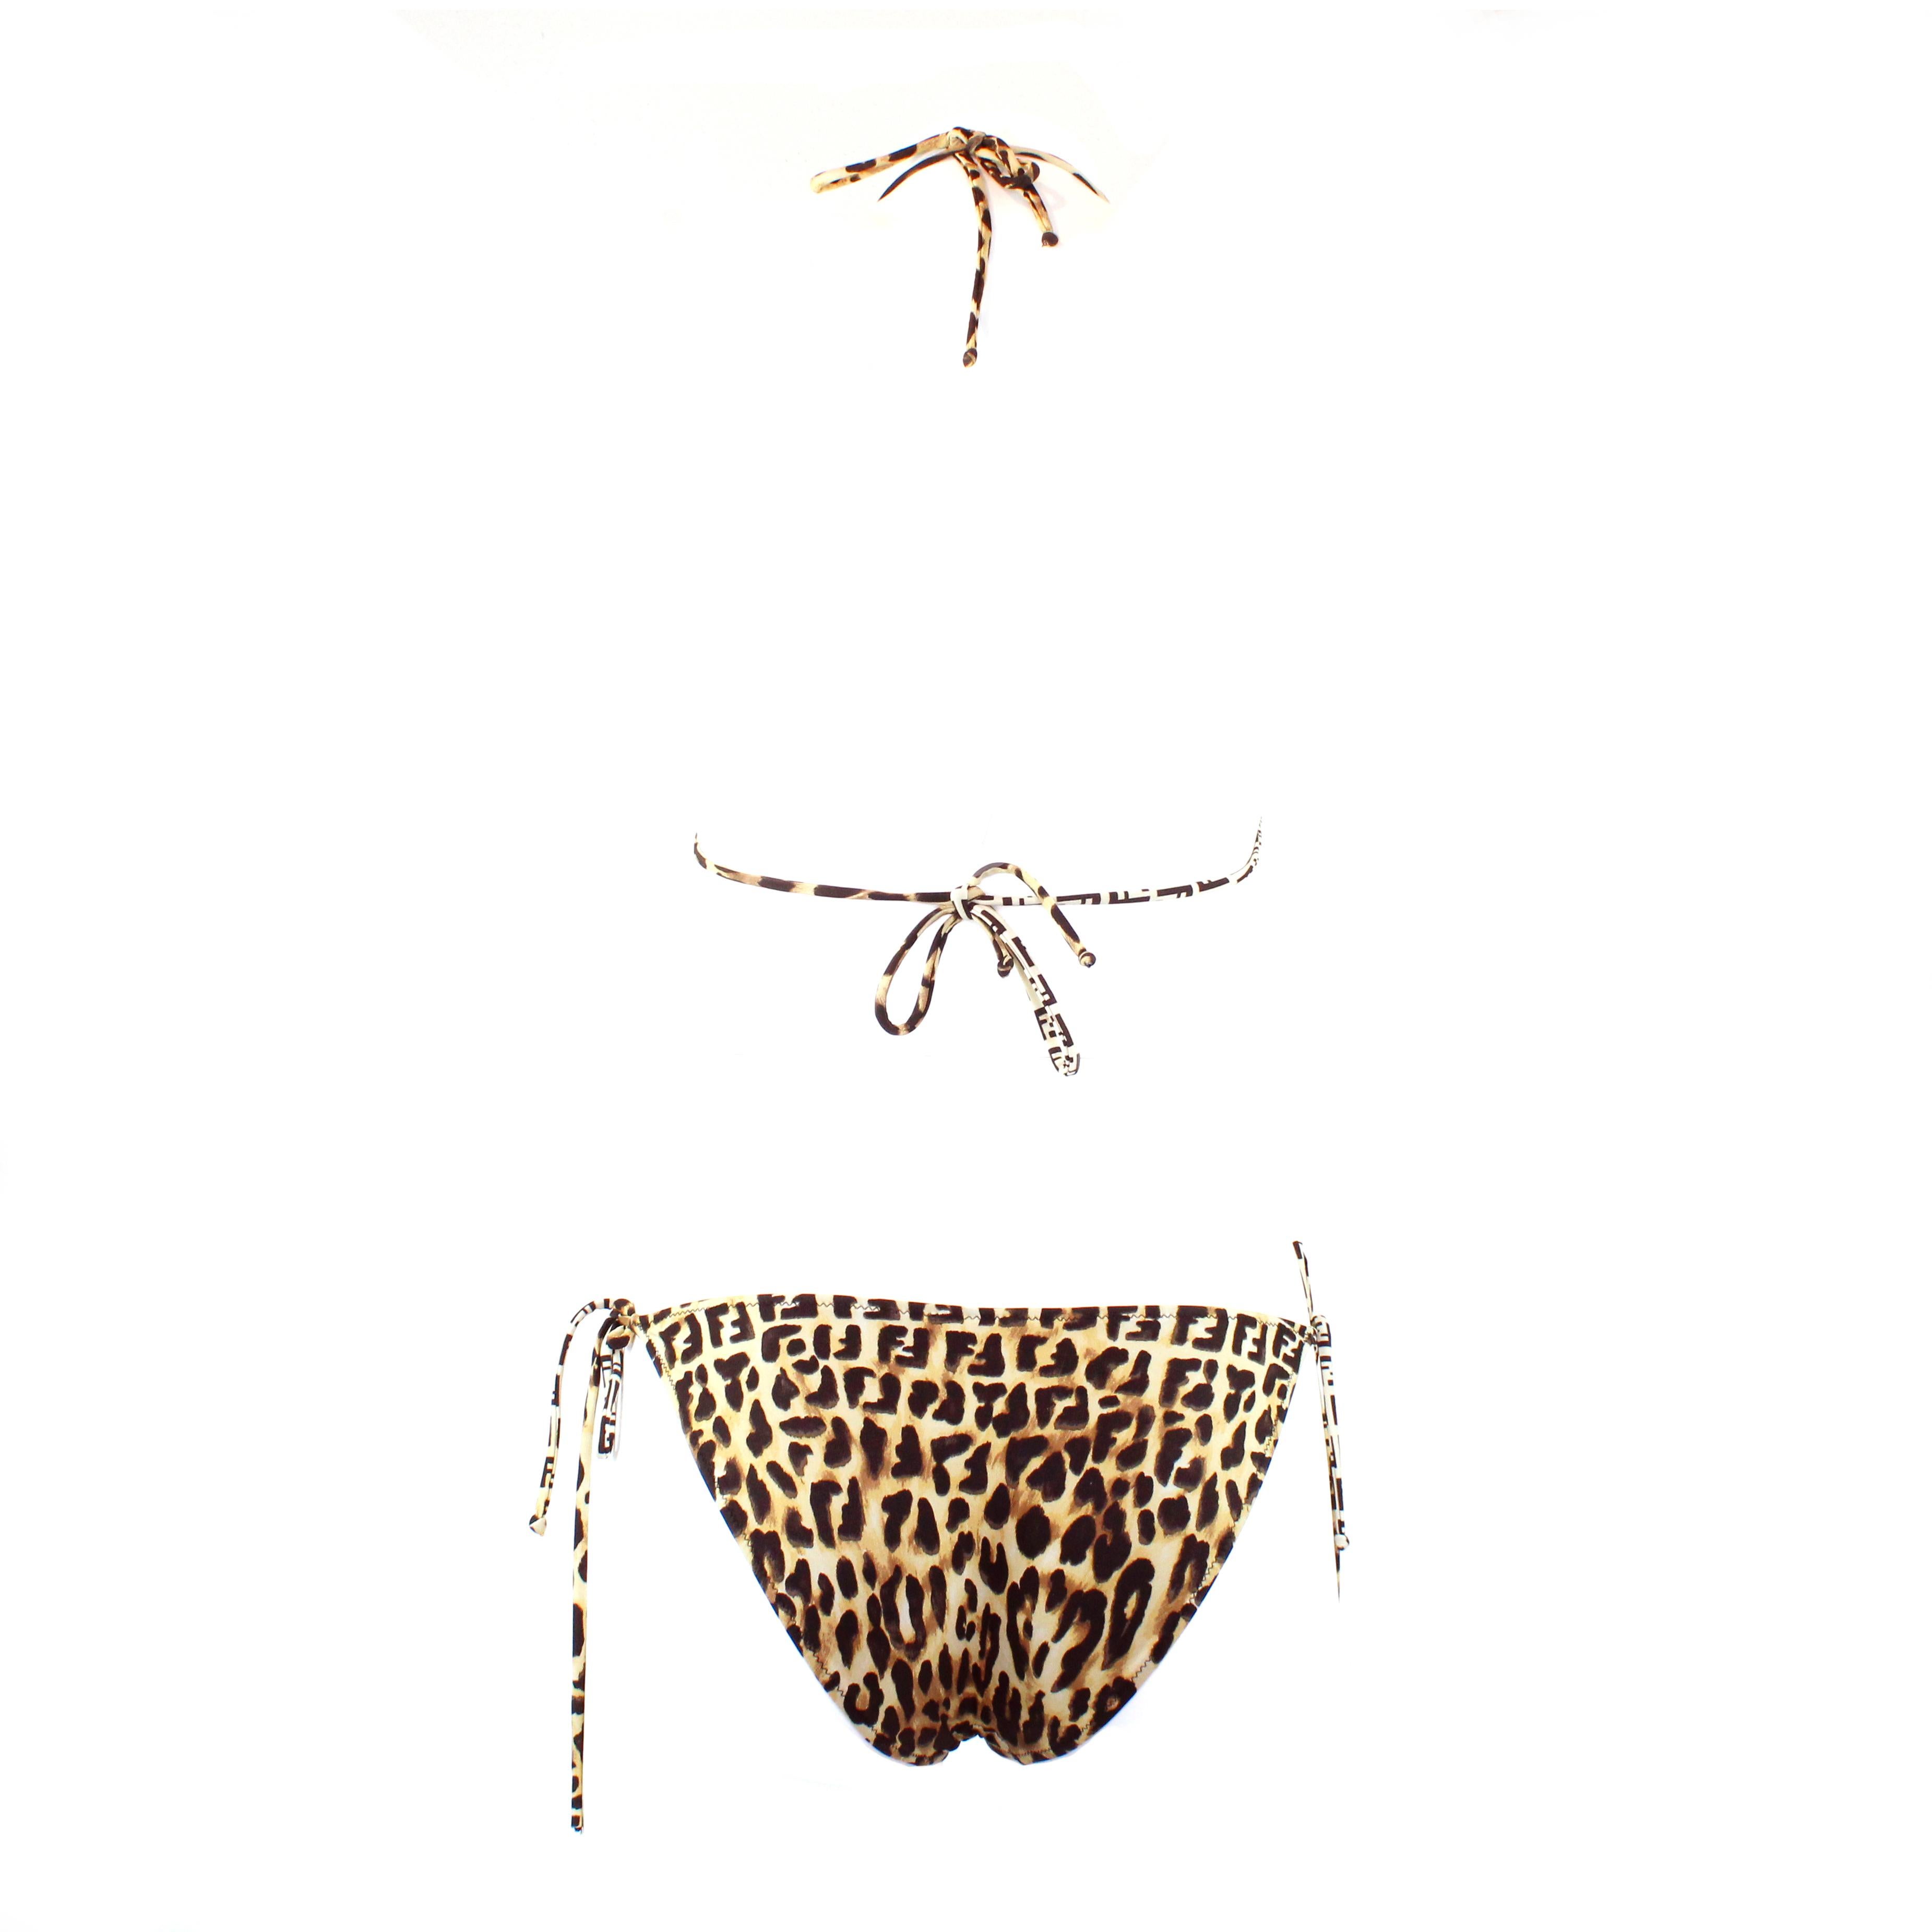 Fendi bikini in zucchino monogram / leopard print, size 42 IT.


Condition:
Excellent.